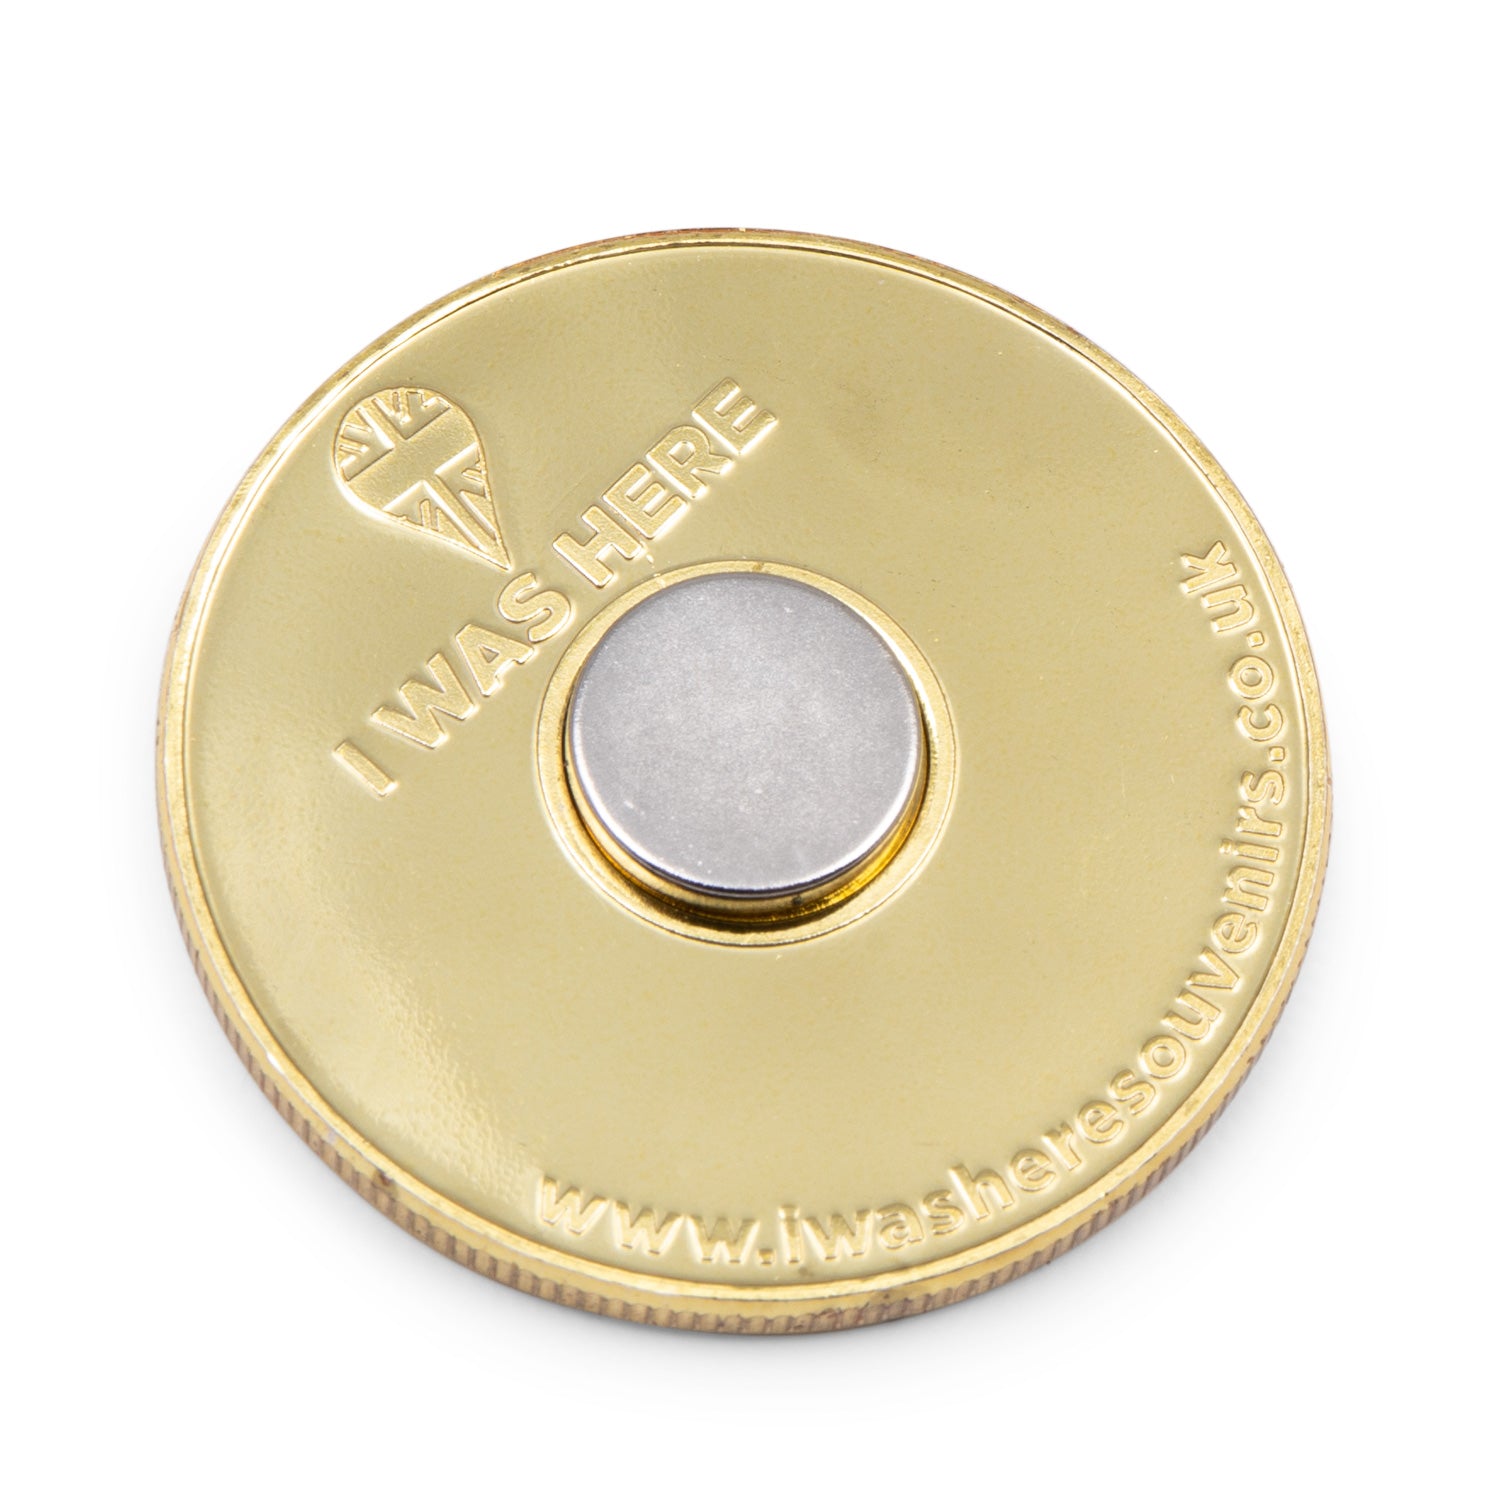 Tower Bridge Gold Medal Coin Fridge Magnet 2